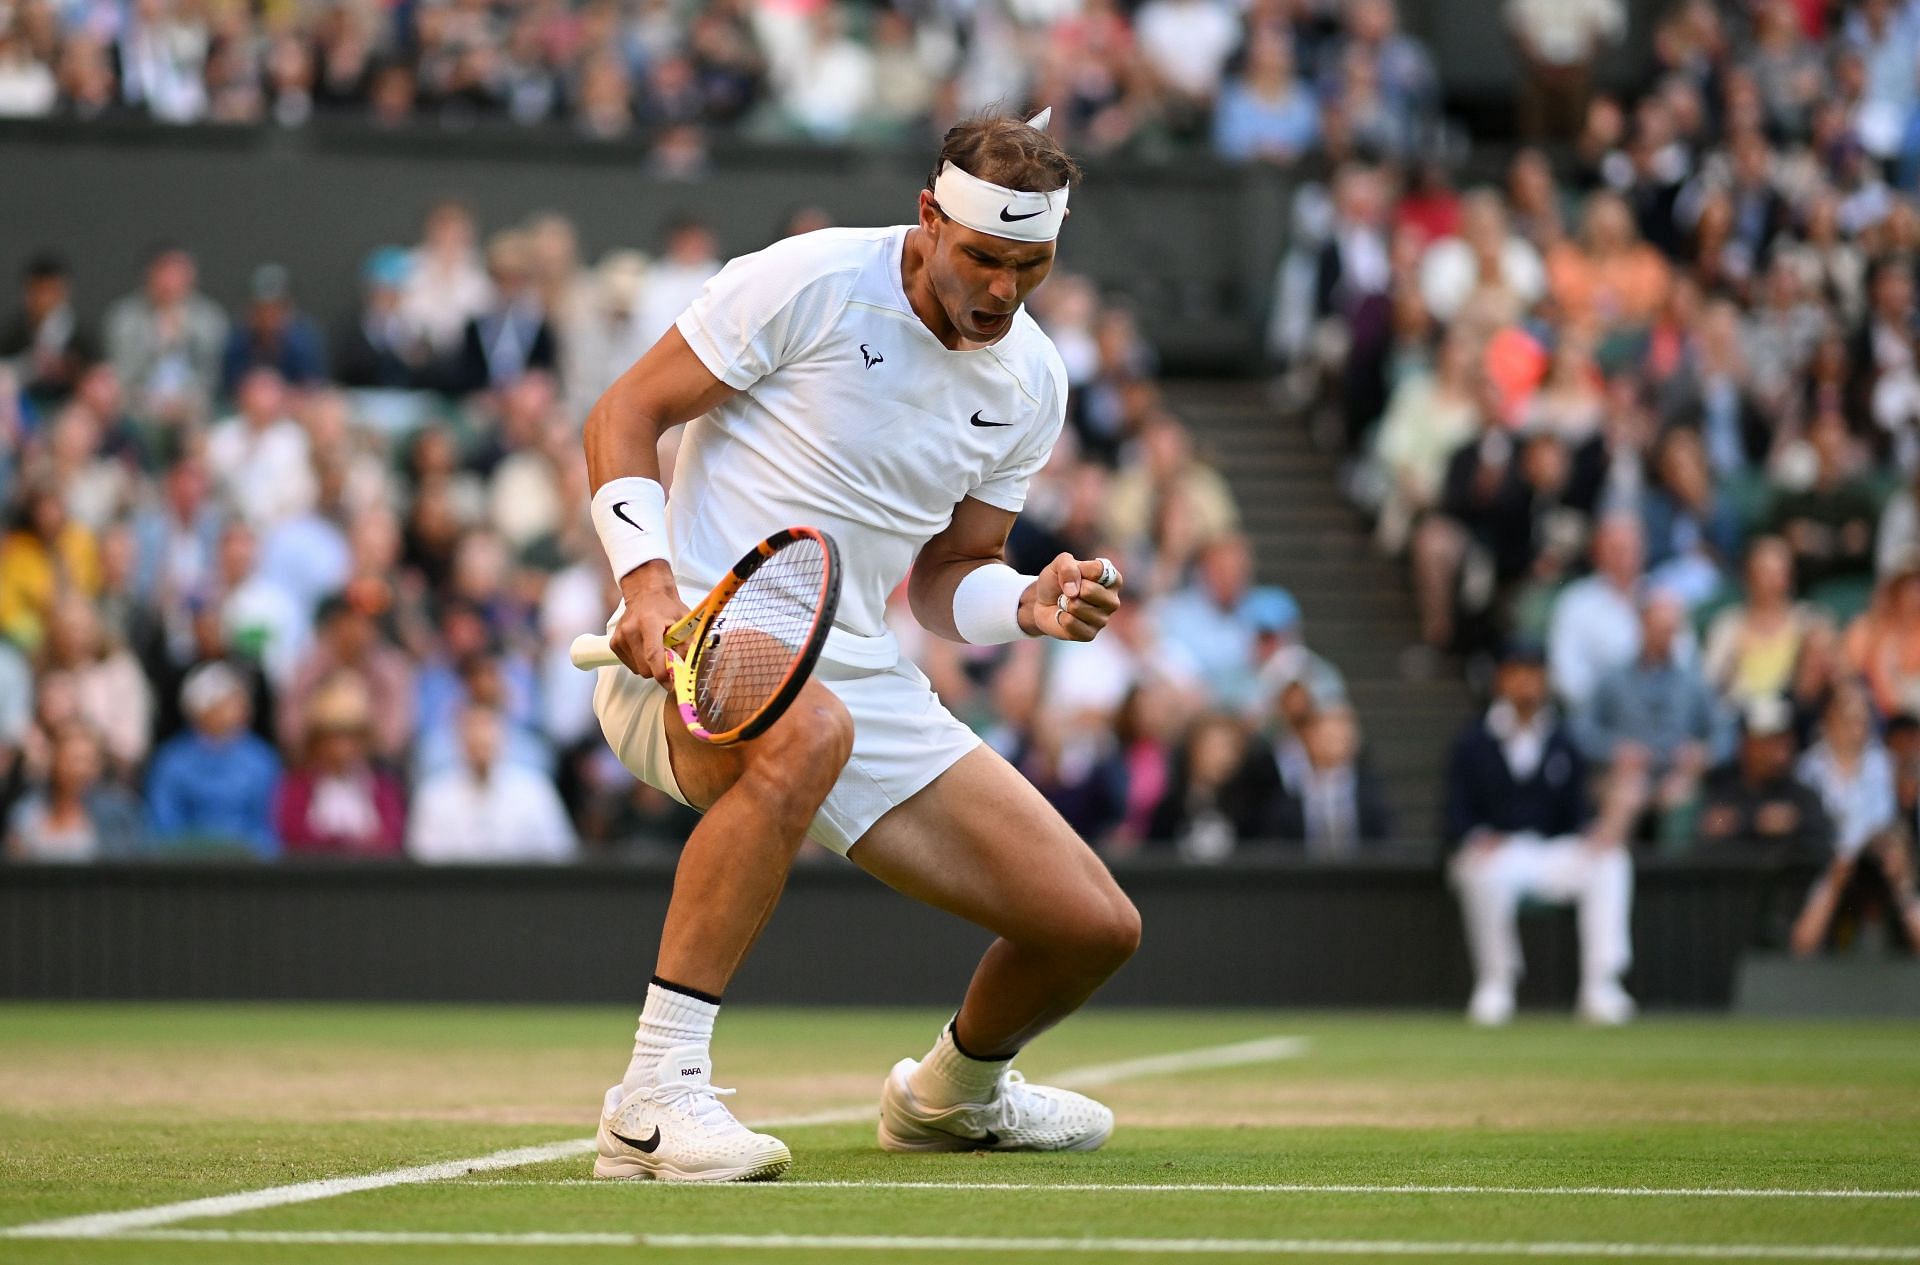 Rafael Nadal at the Championships - Wimbledon 2022